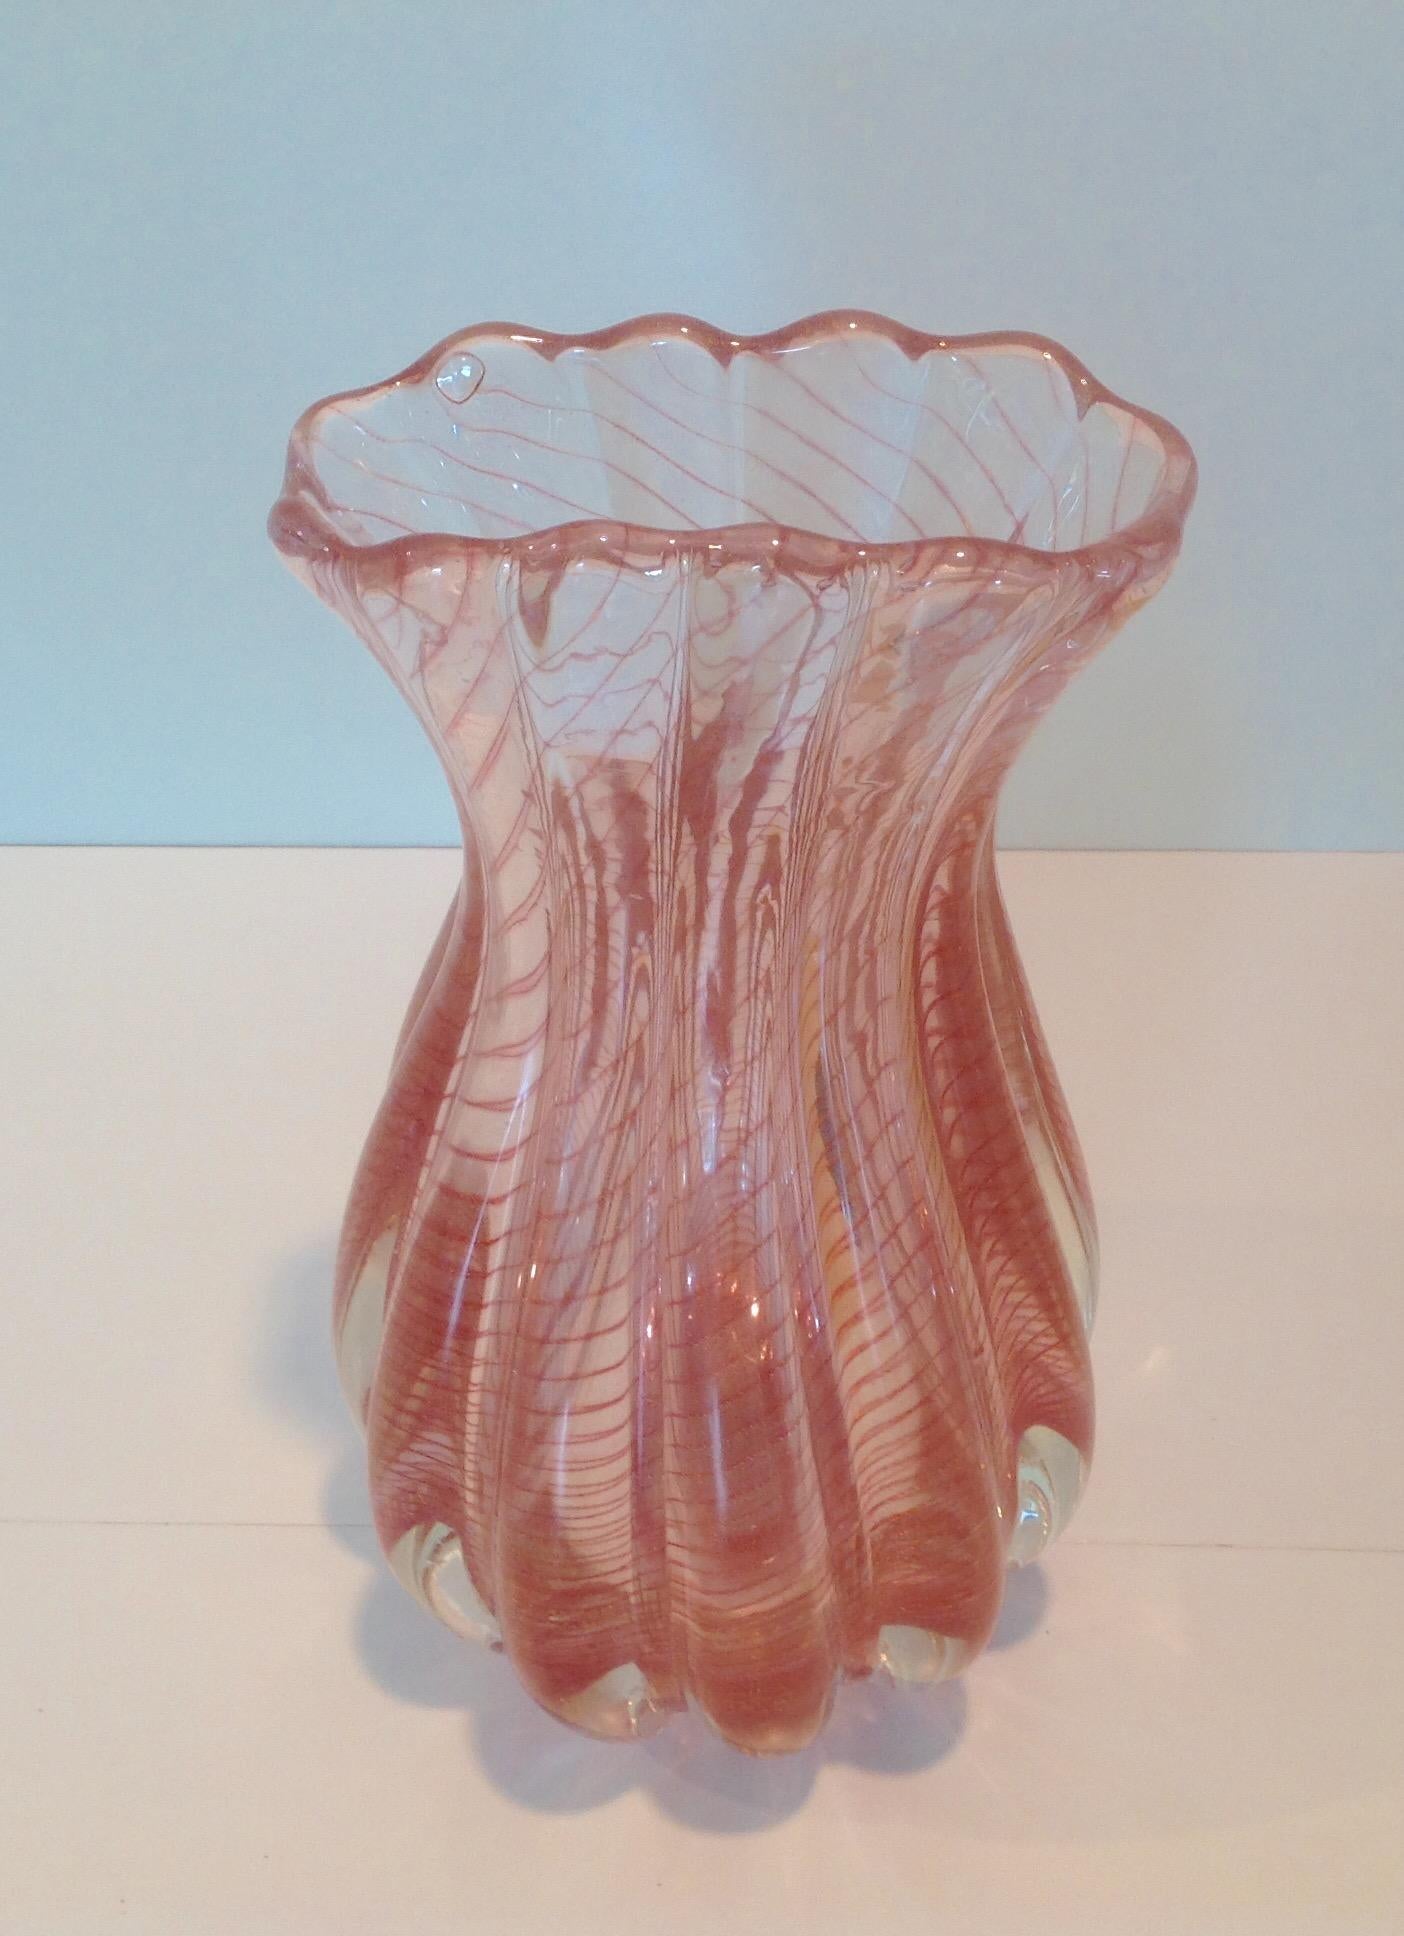 Zebrato vase designed by Ercole Barovier for Barovier and Toso, circa 1950s.